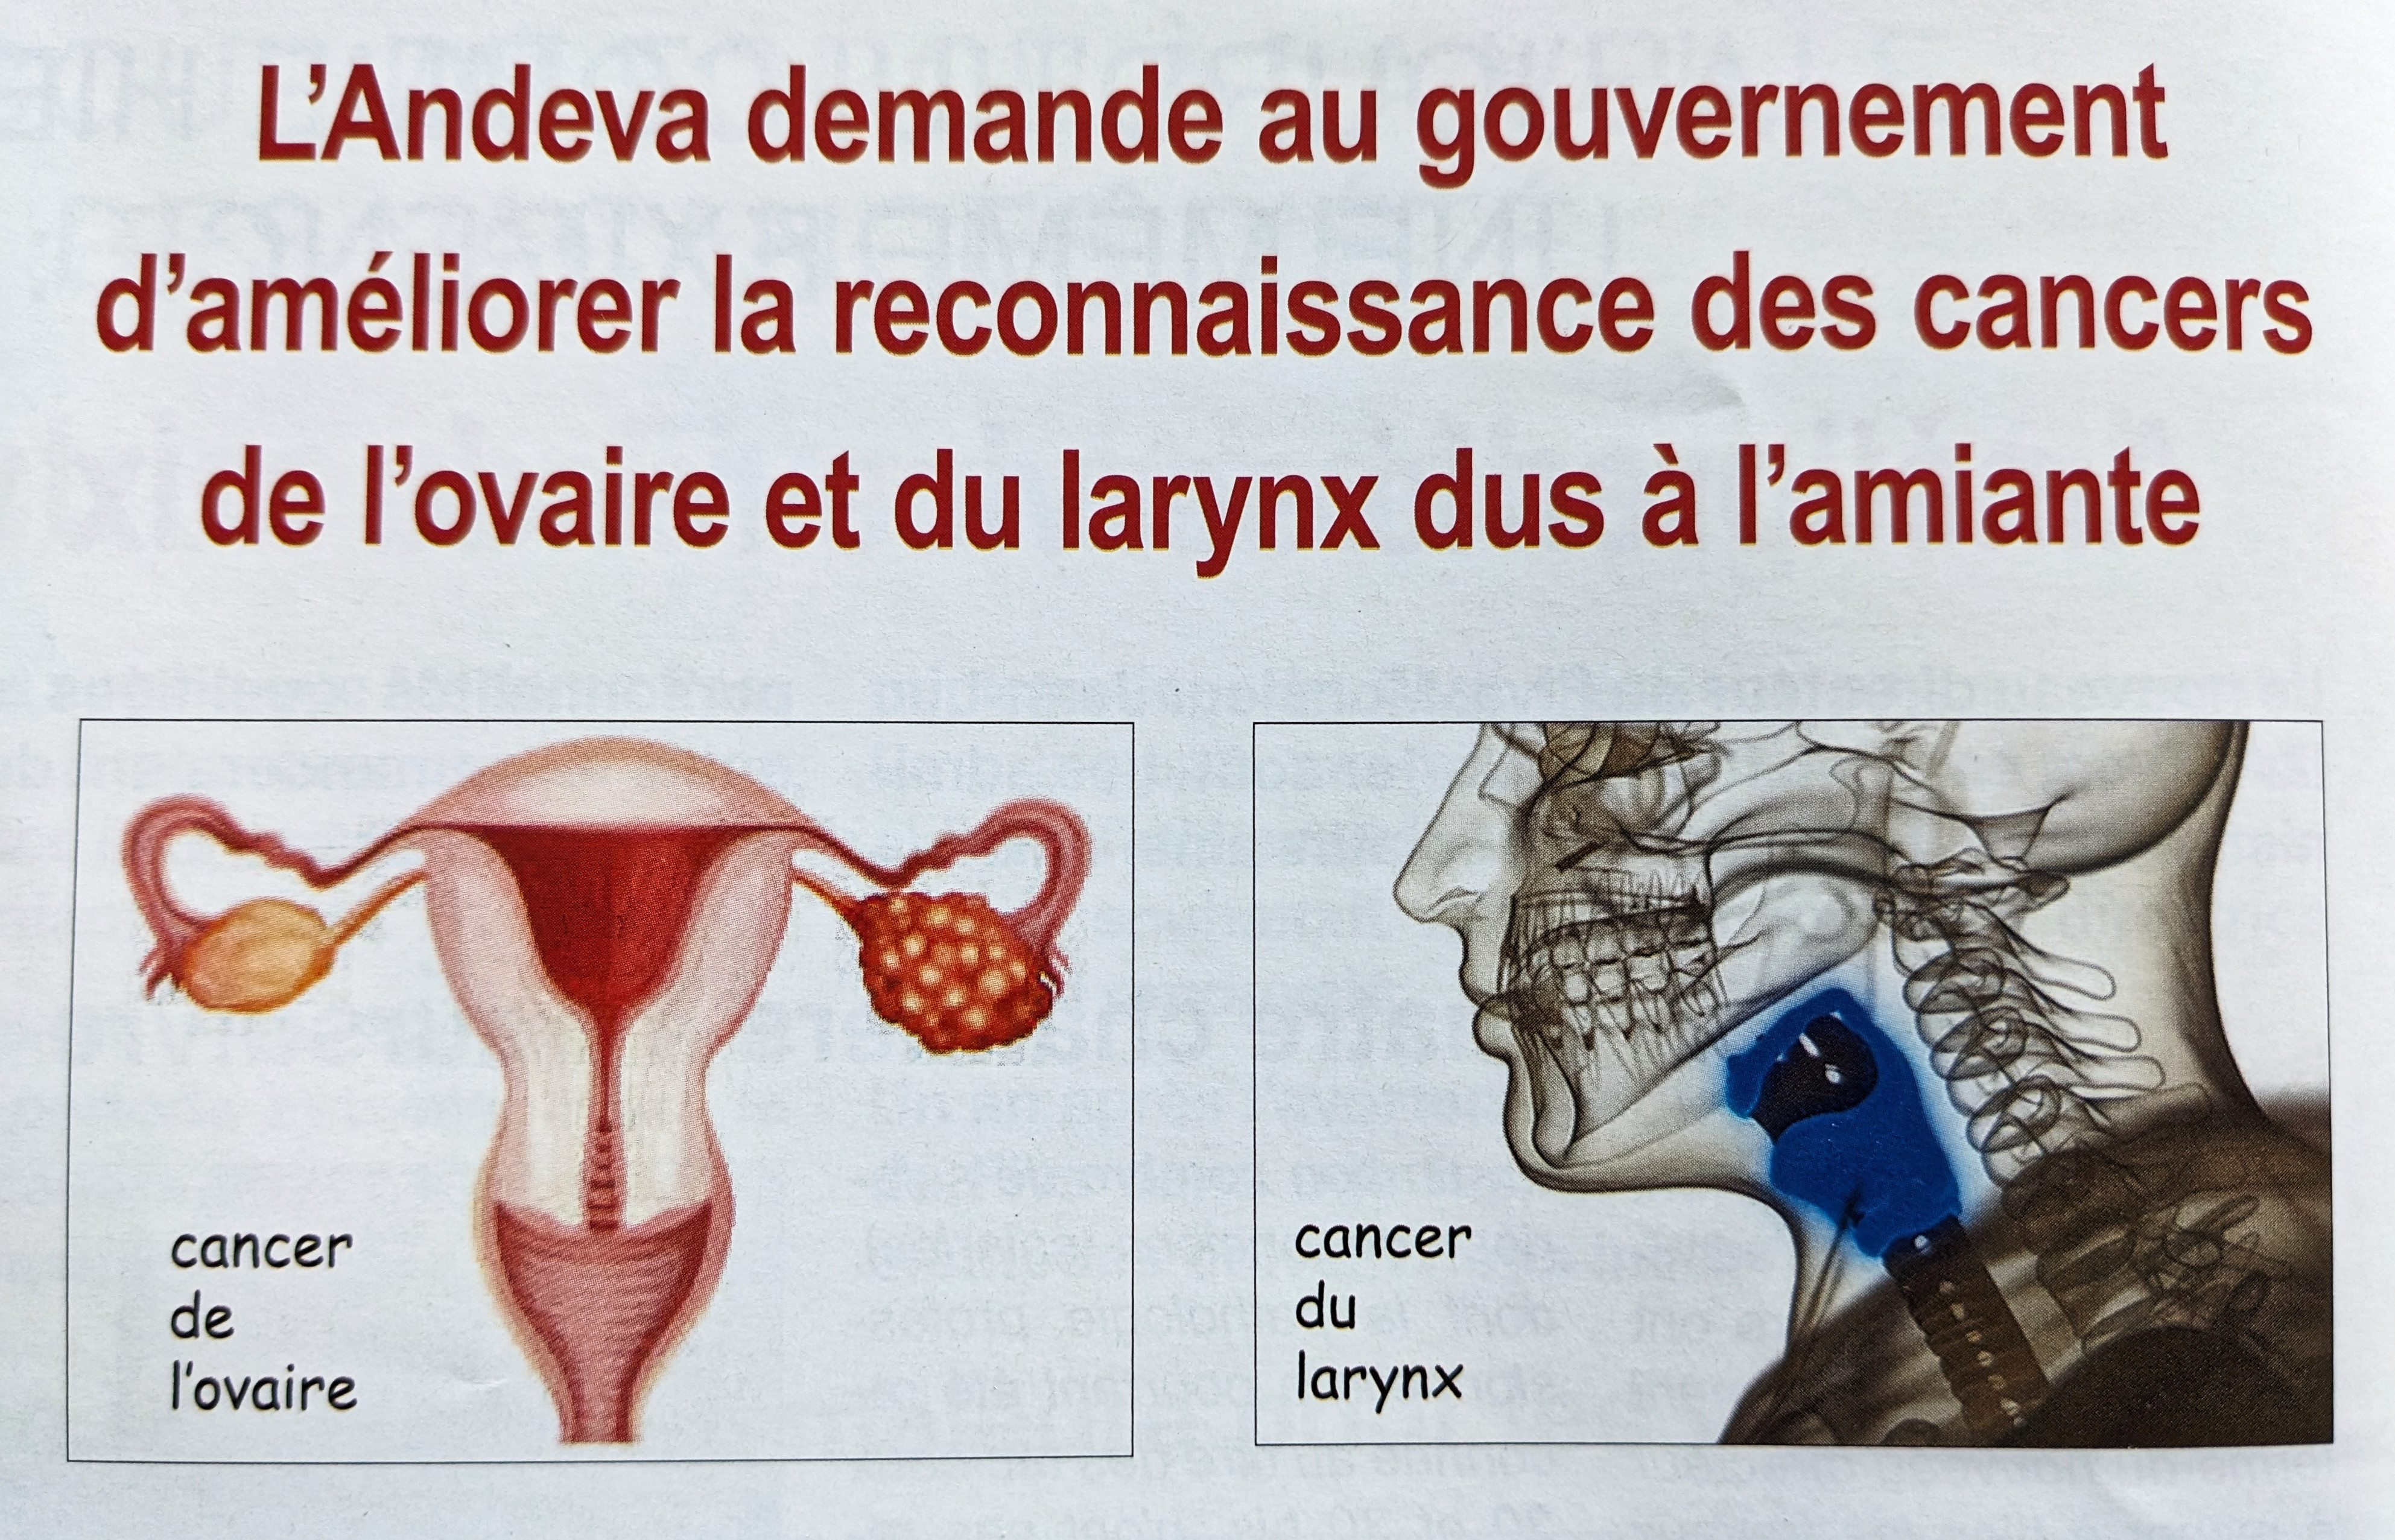 Les cancers du larynx et de l'ovaire provoqués par l'amiante reconnus en  maladie professionnelle - Le Parisien